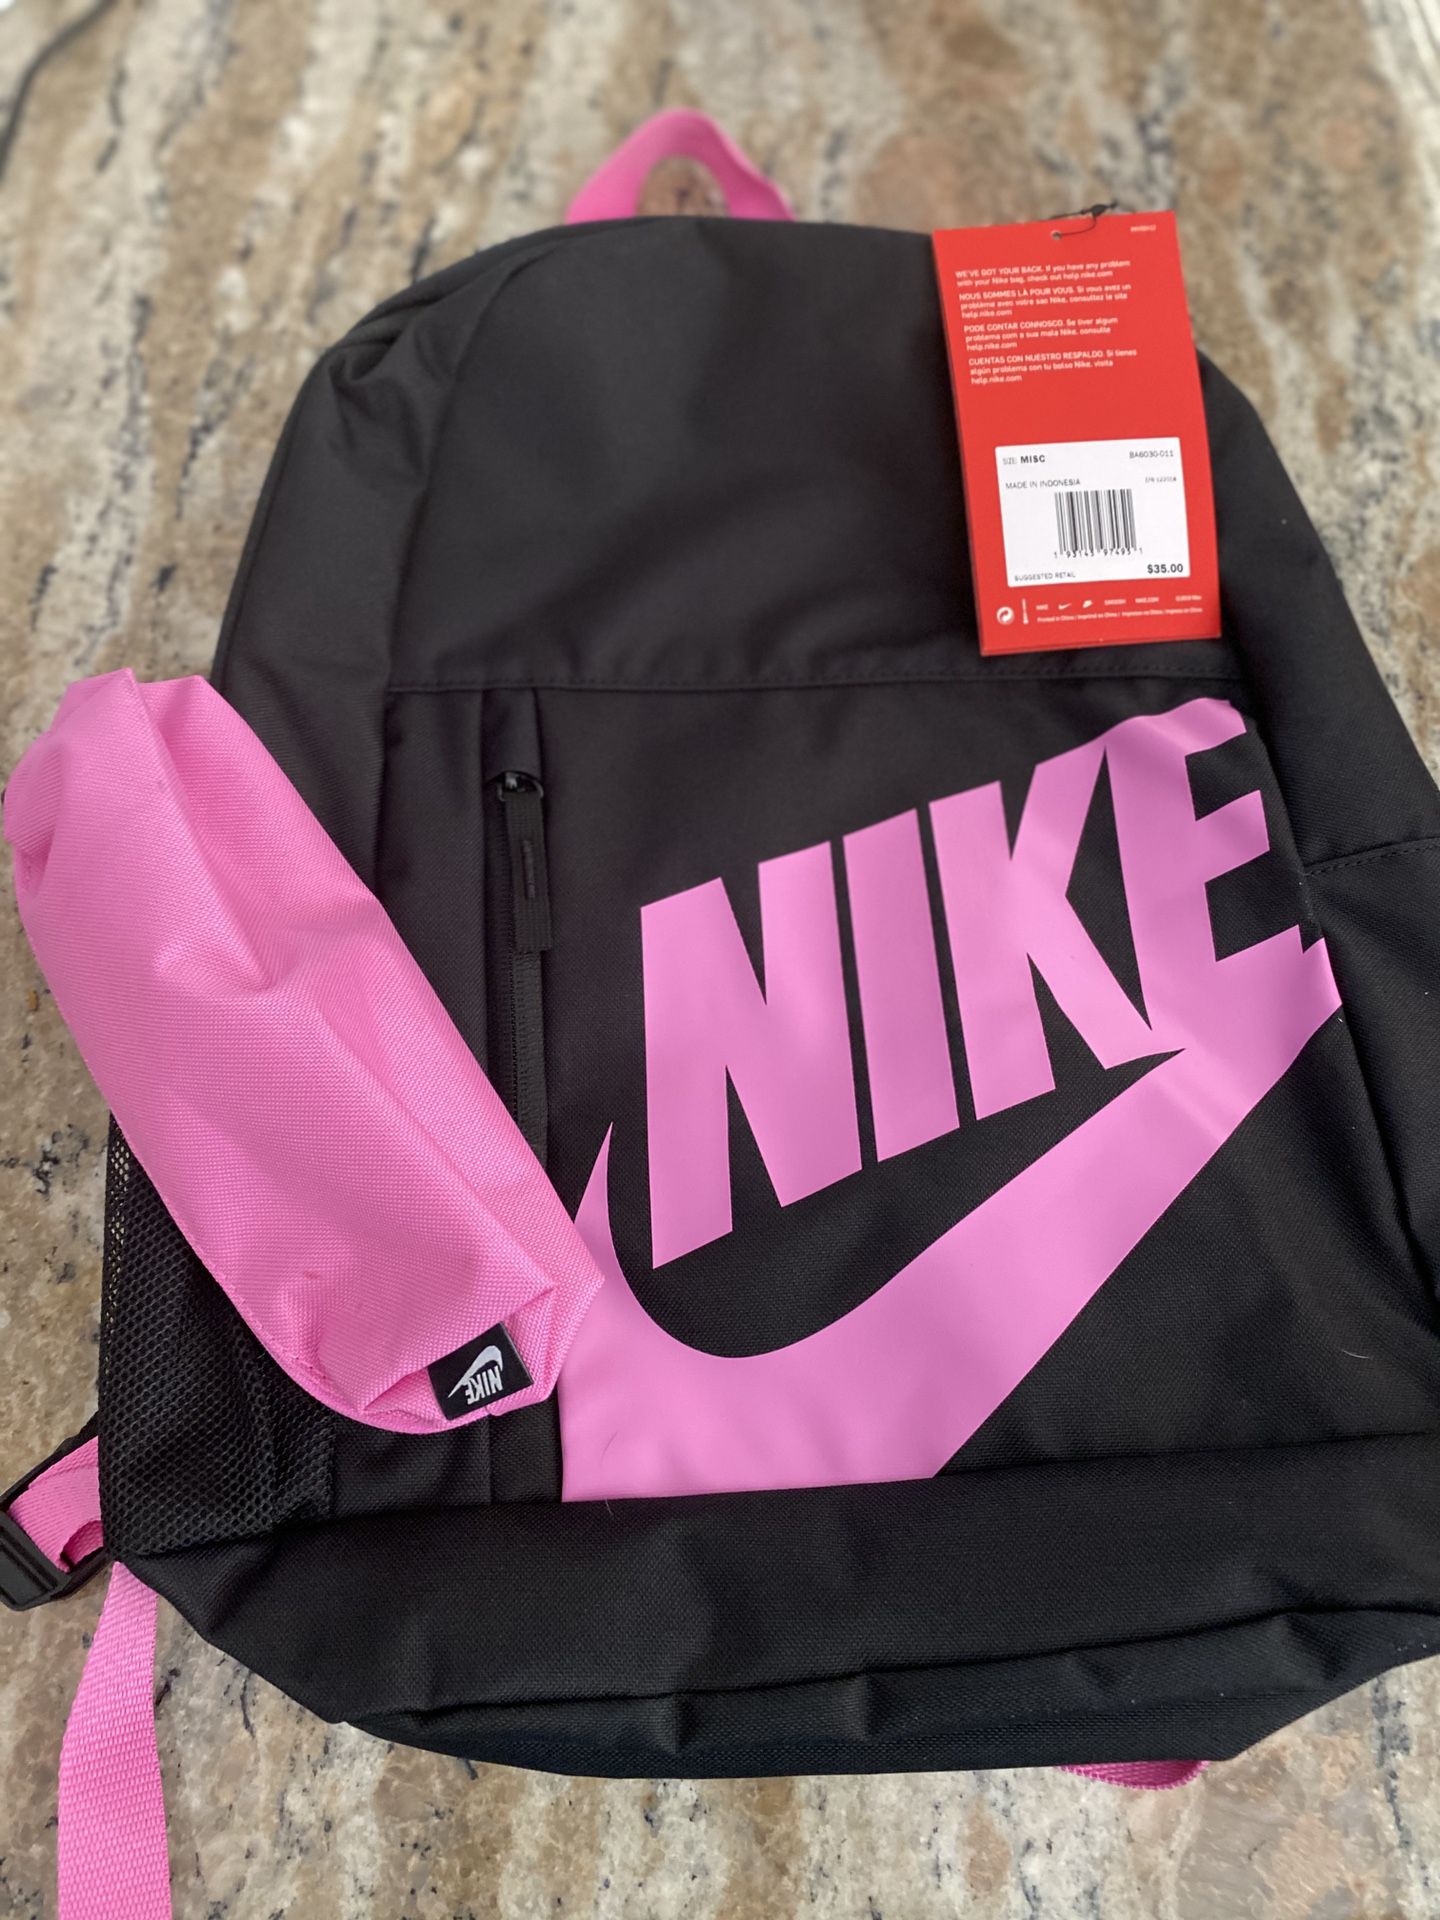 New Nike Element Backpack